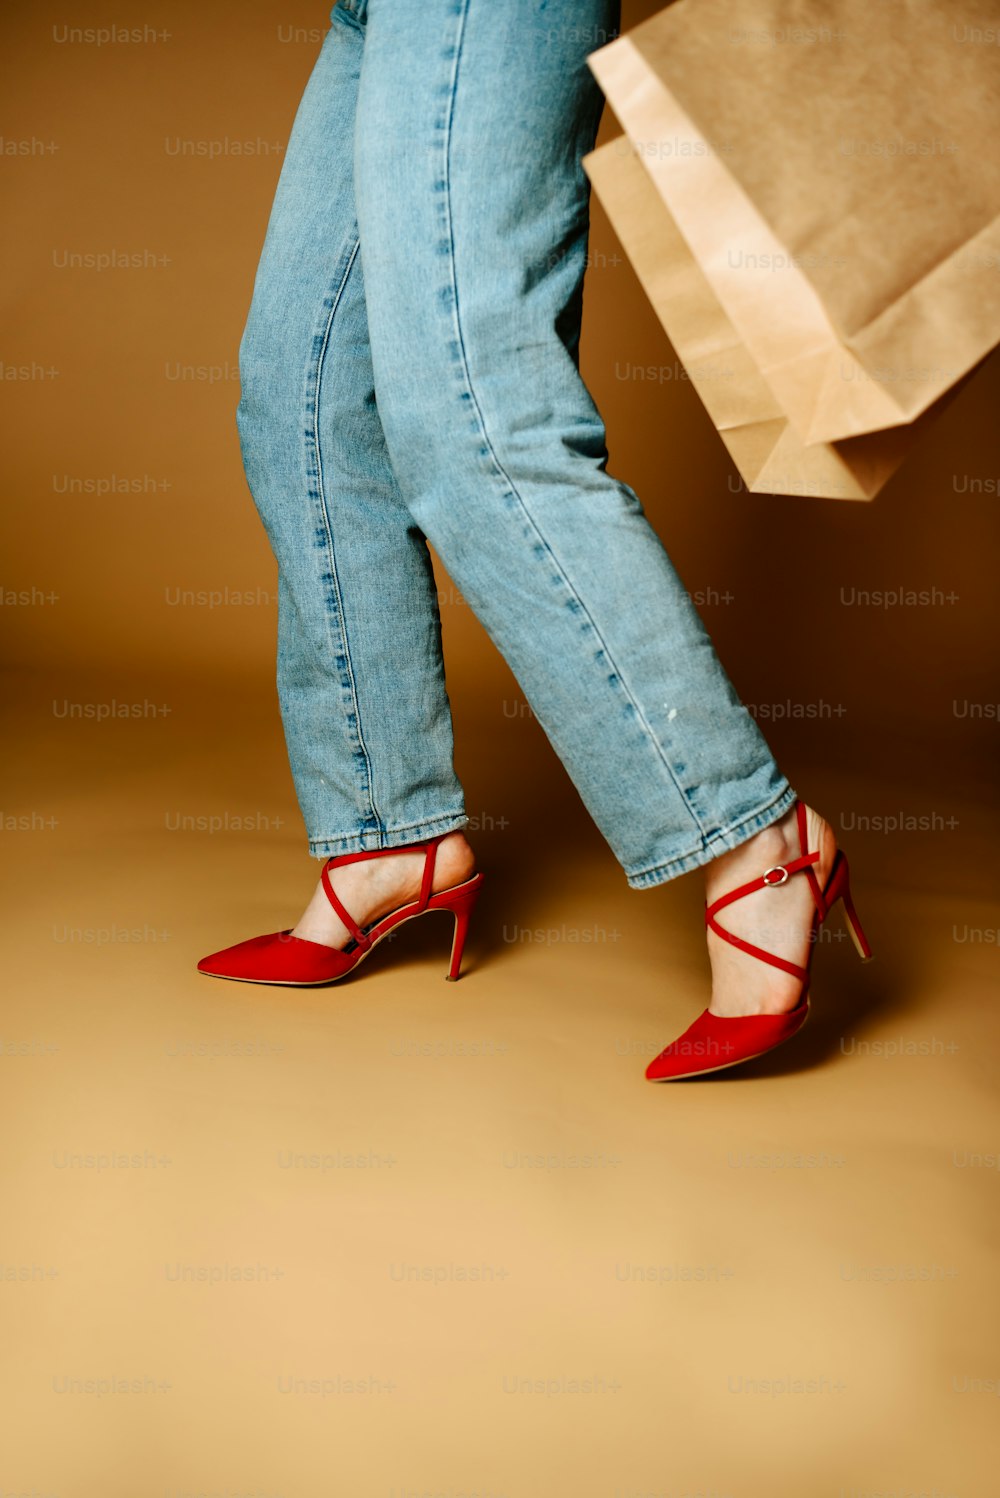 Die Beine einer Frau in High Heels halten eine Einkaufstasche